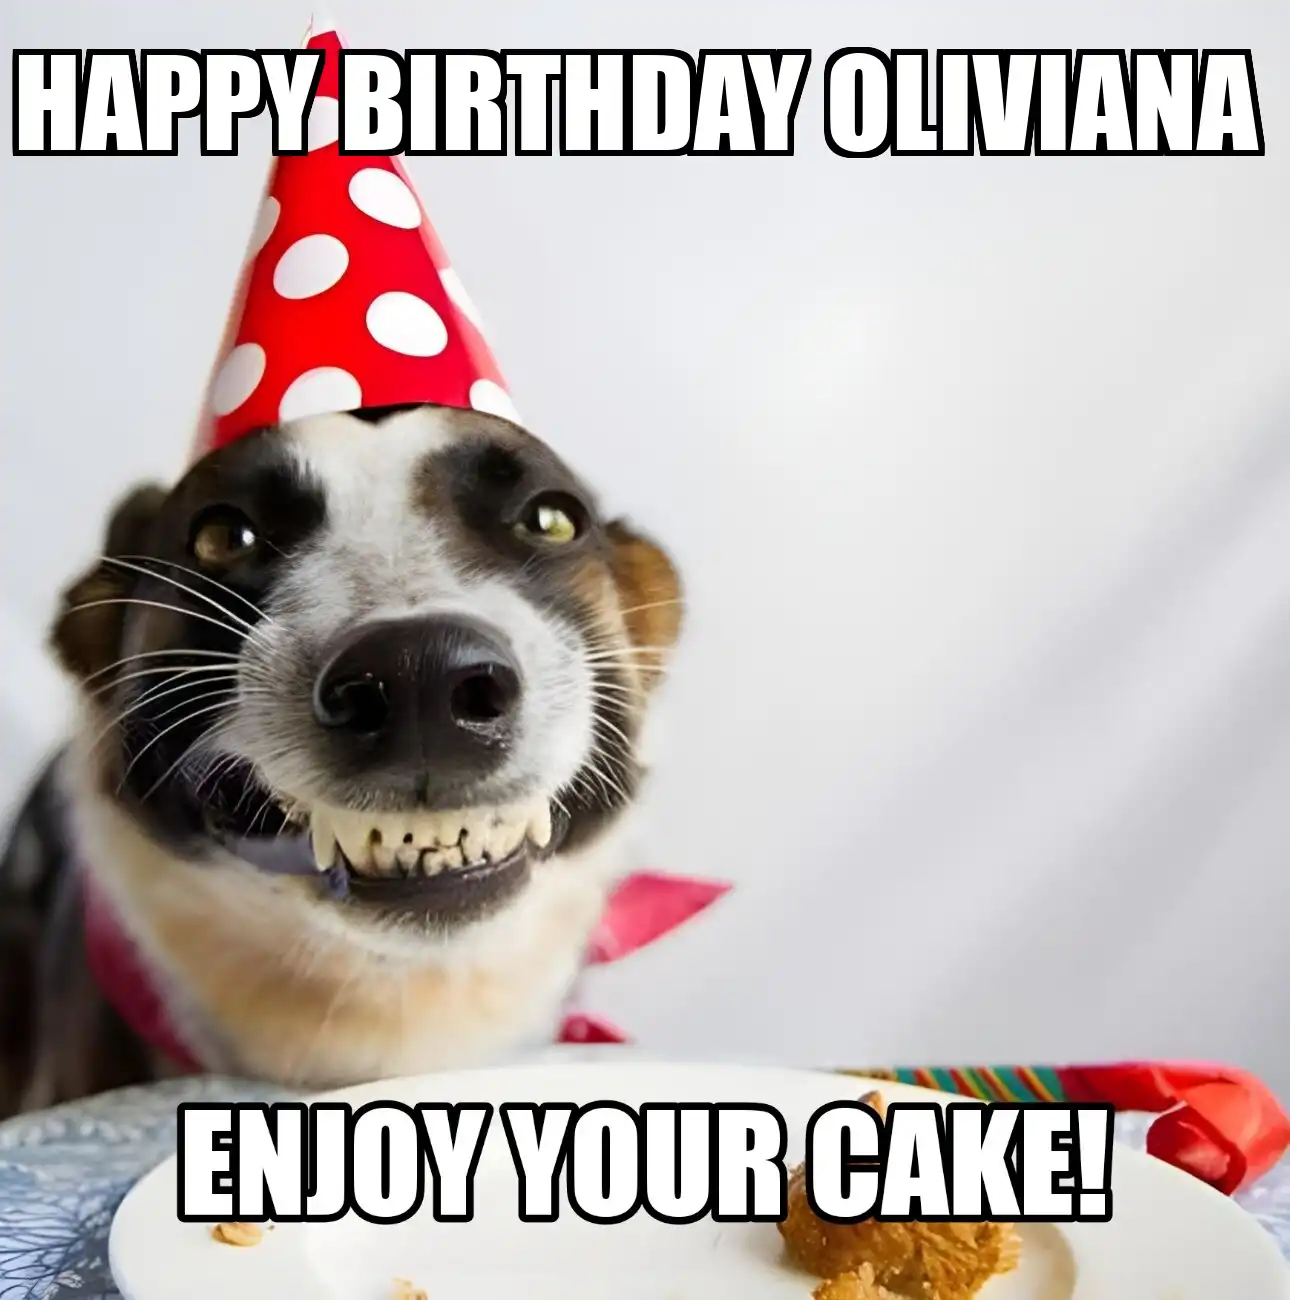 Happy Birthday Oliviana Enjoy Your Cake Dog Meme